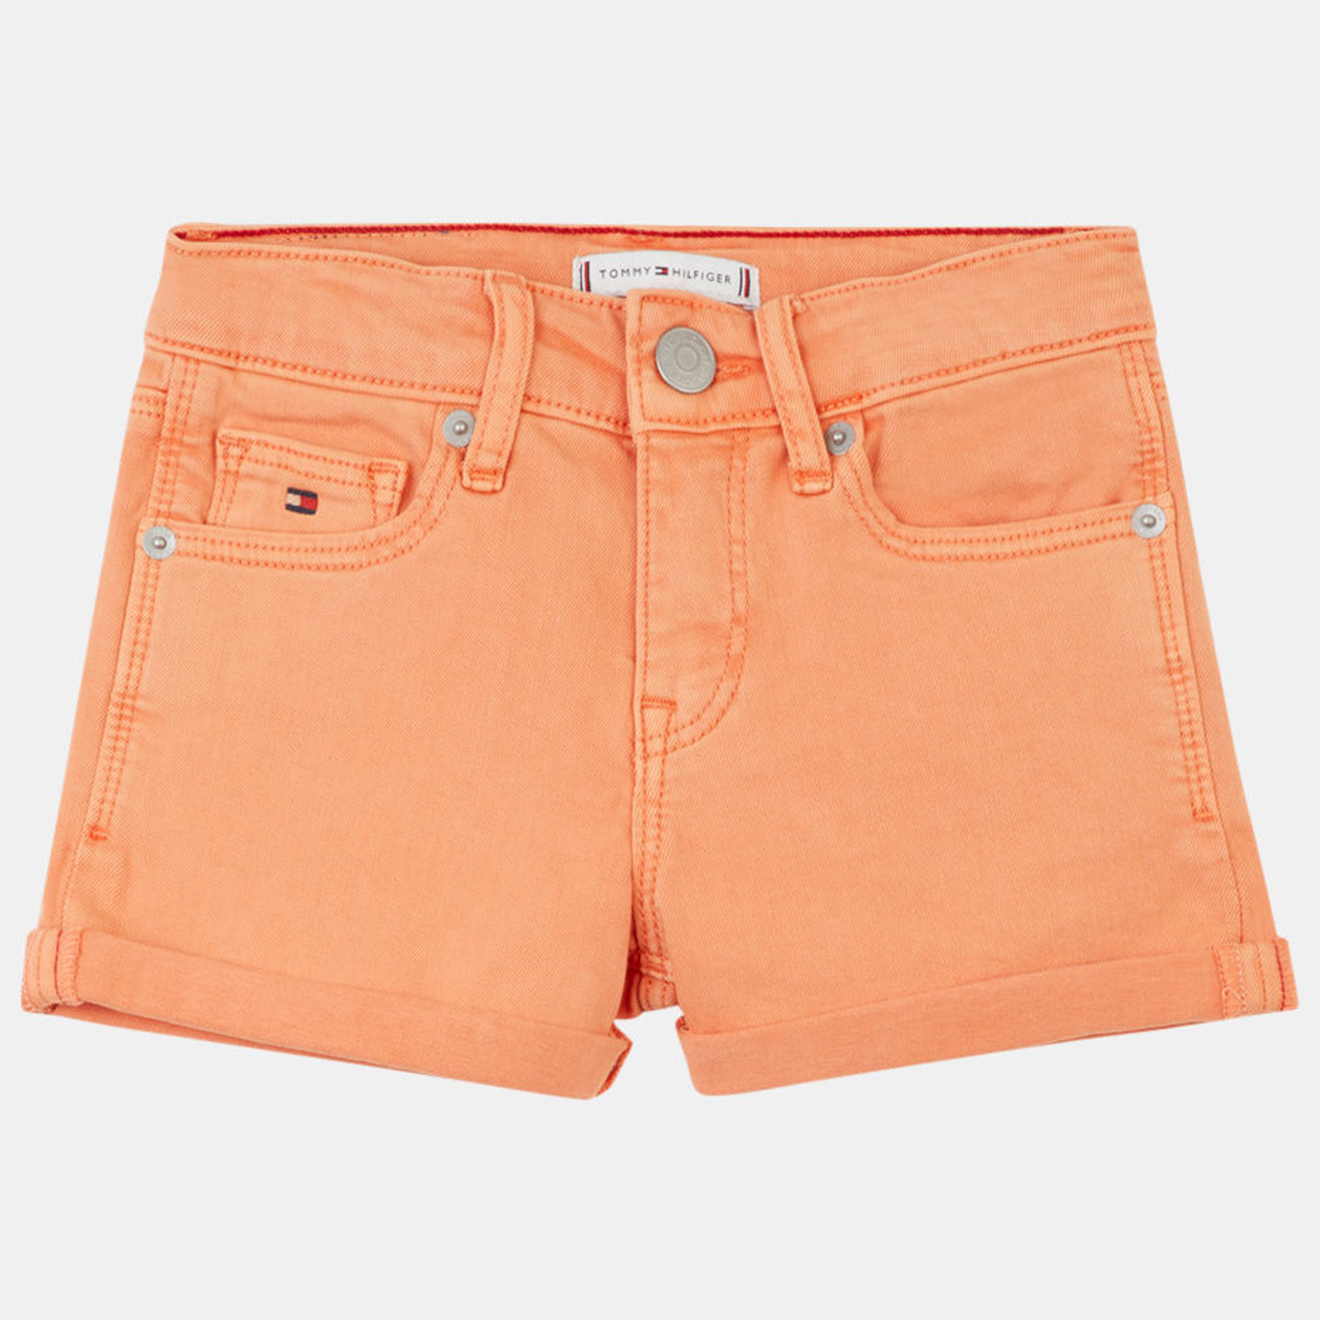 tommy hilfiger - short en jean ajusté orange clair